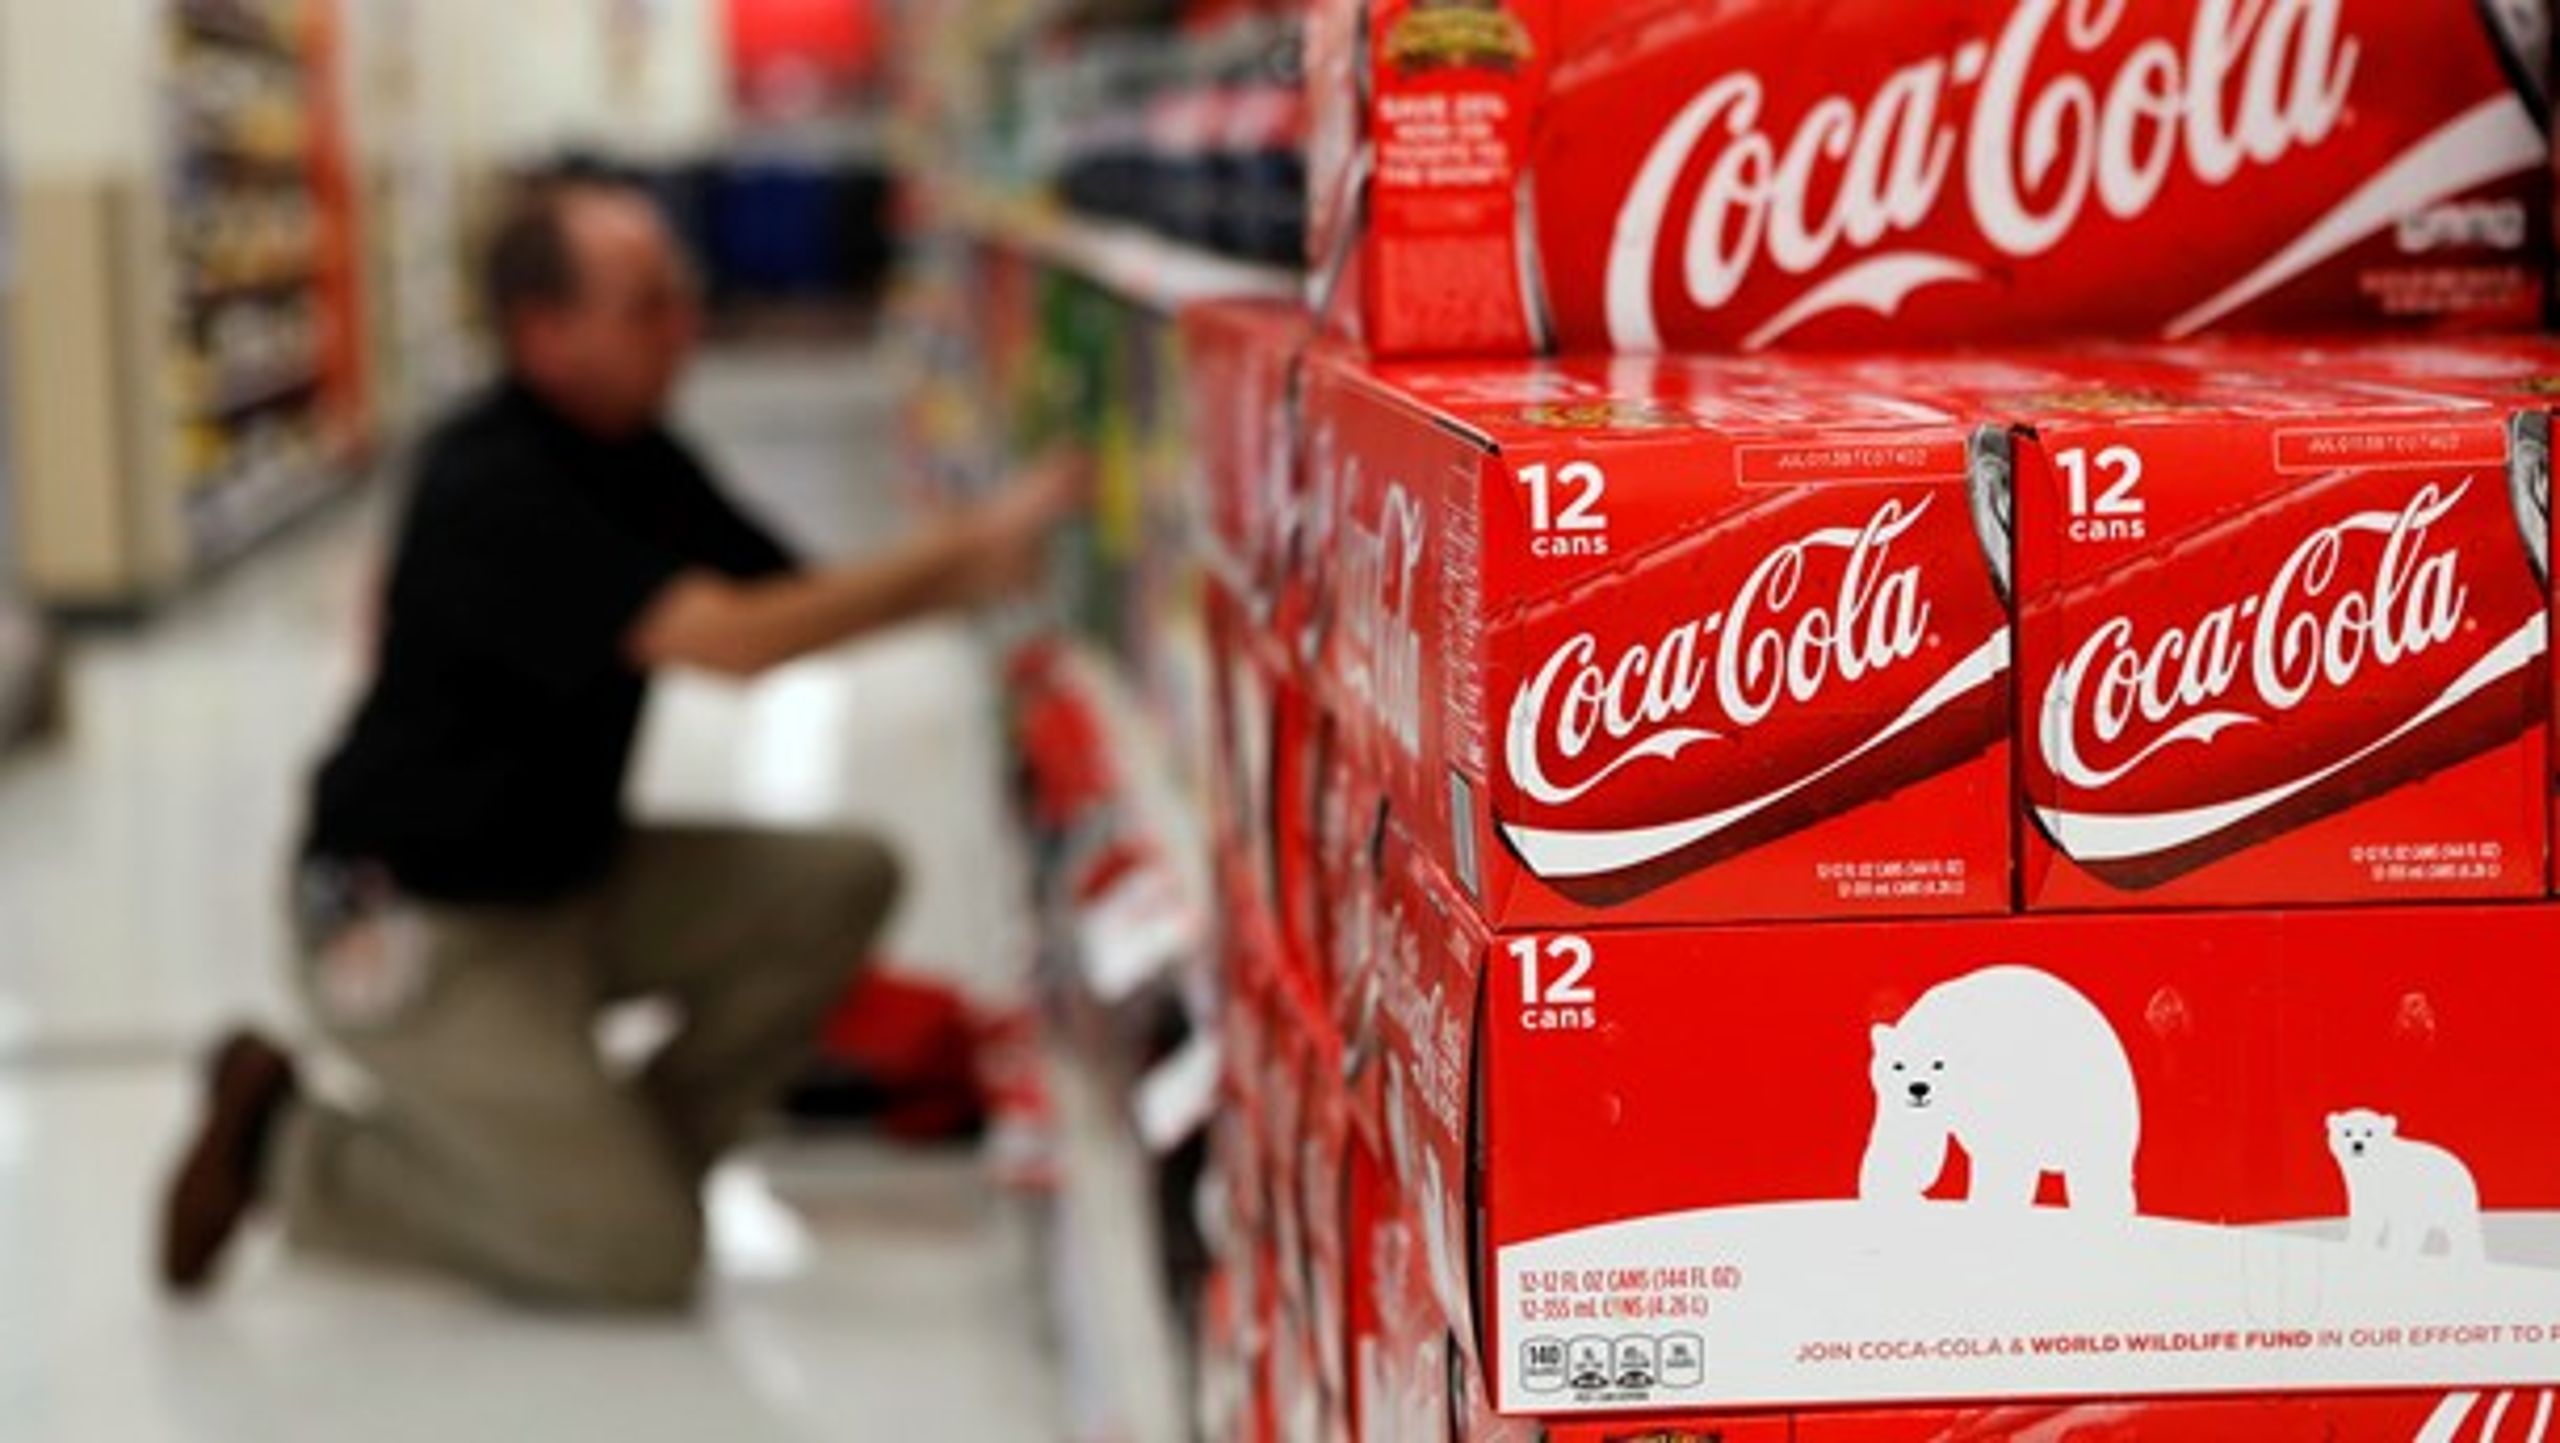 Bryggeriforeningen, som Coca Cola er medlem af, vil tage ansvar for danskernes sundhed. Vi vil tilbyde opskrifter med mindre sukker, skriver foreningens formand, Niels Hald.